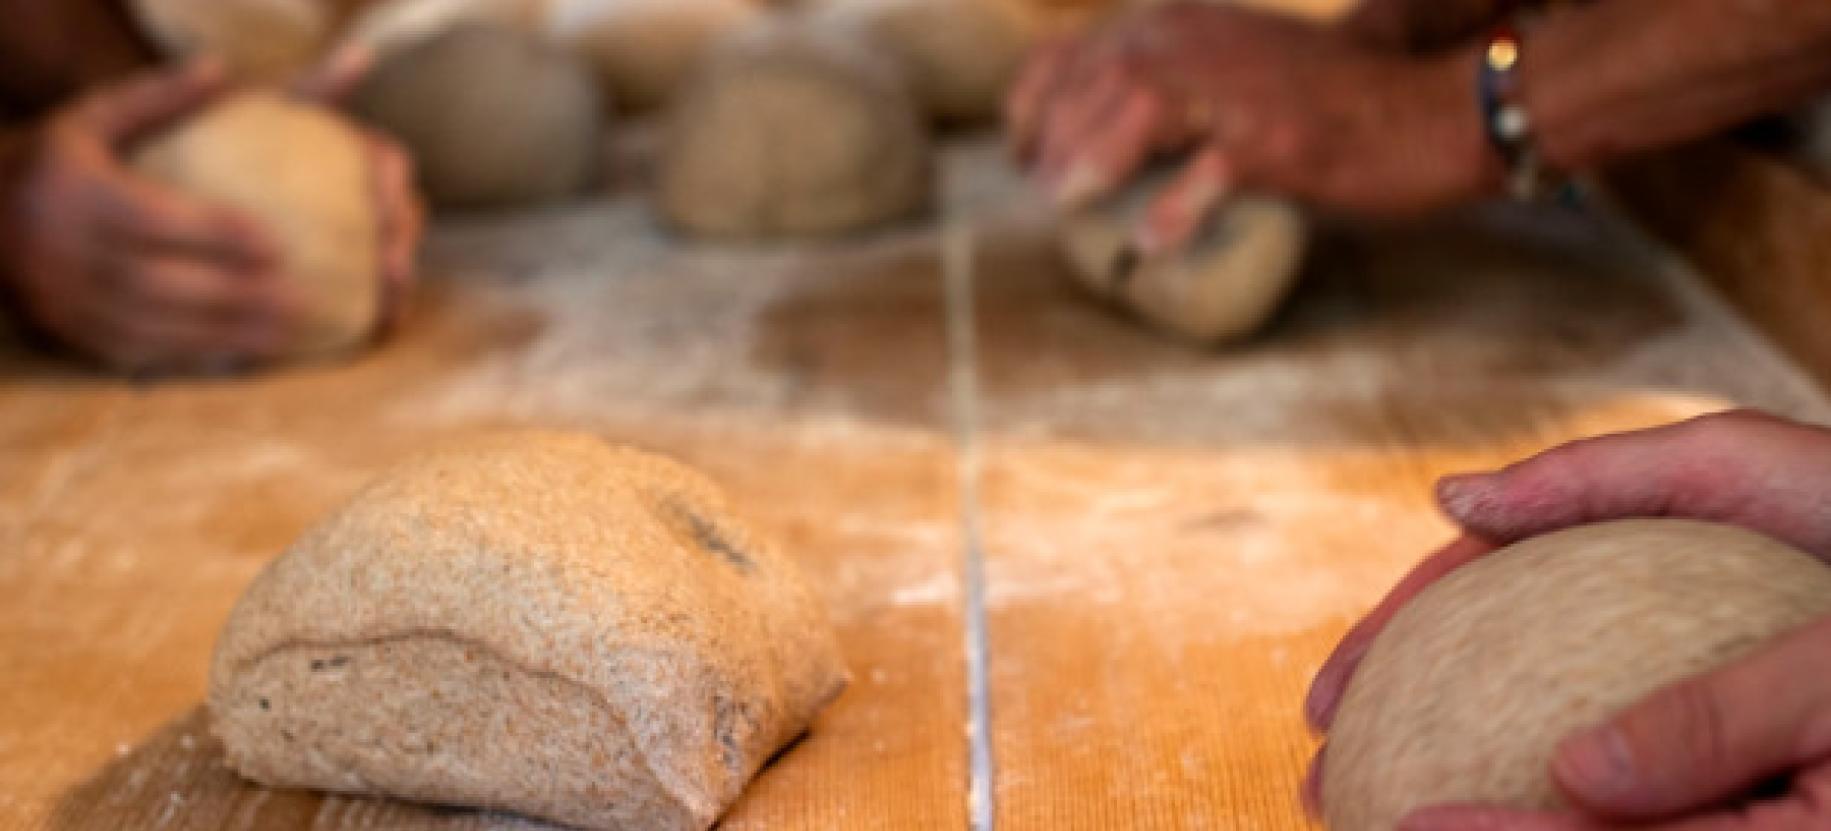 Discovering black bread: les trois villages